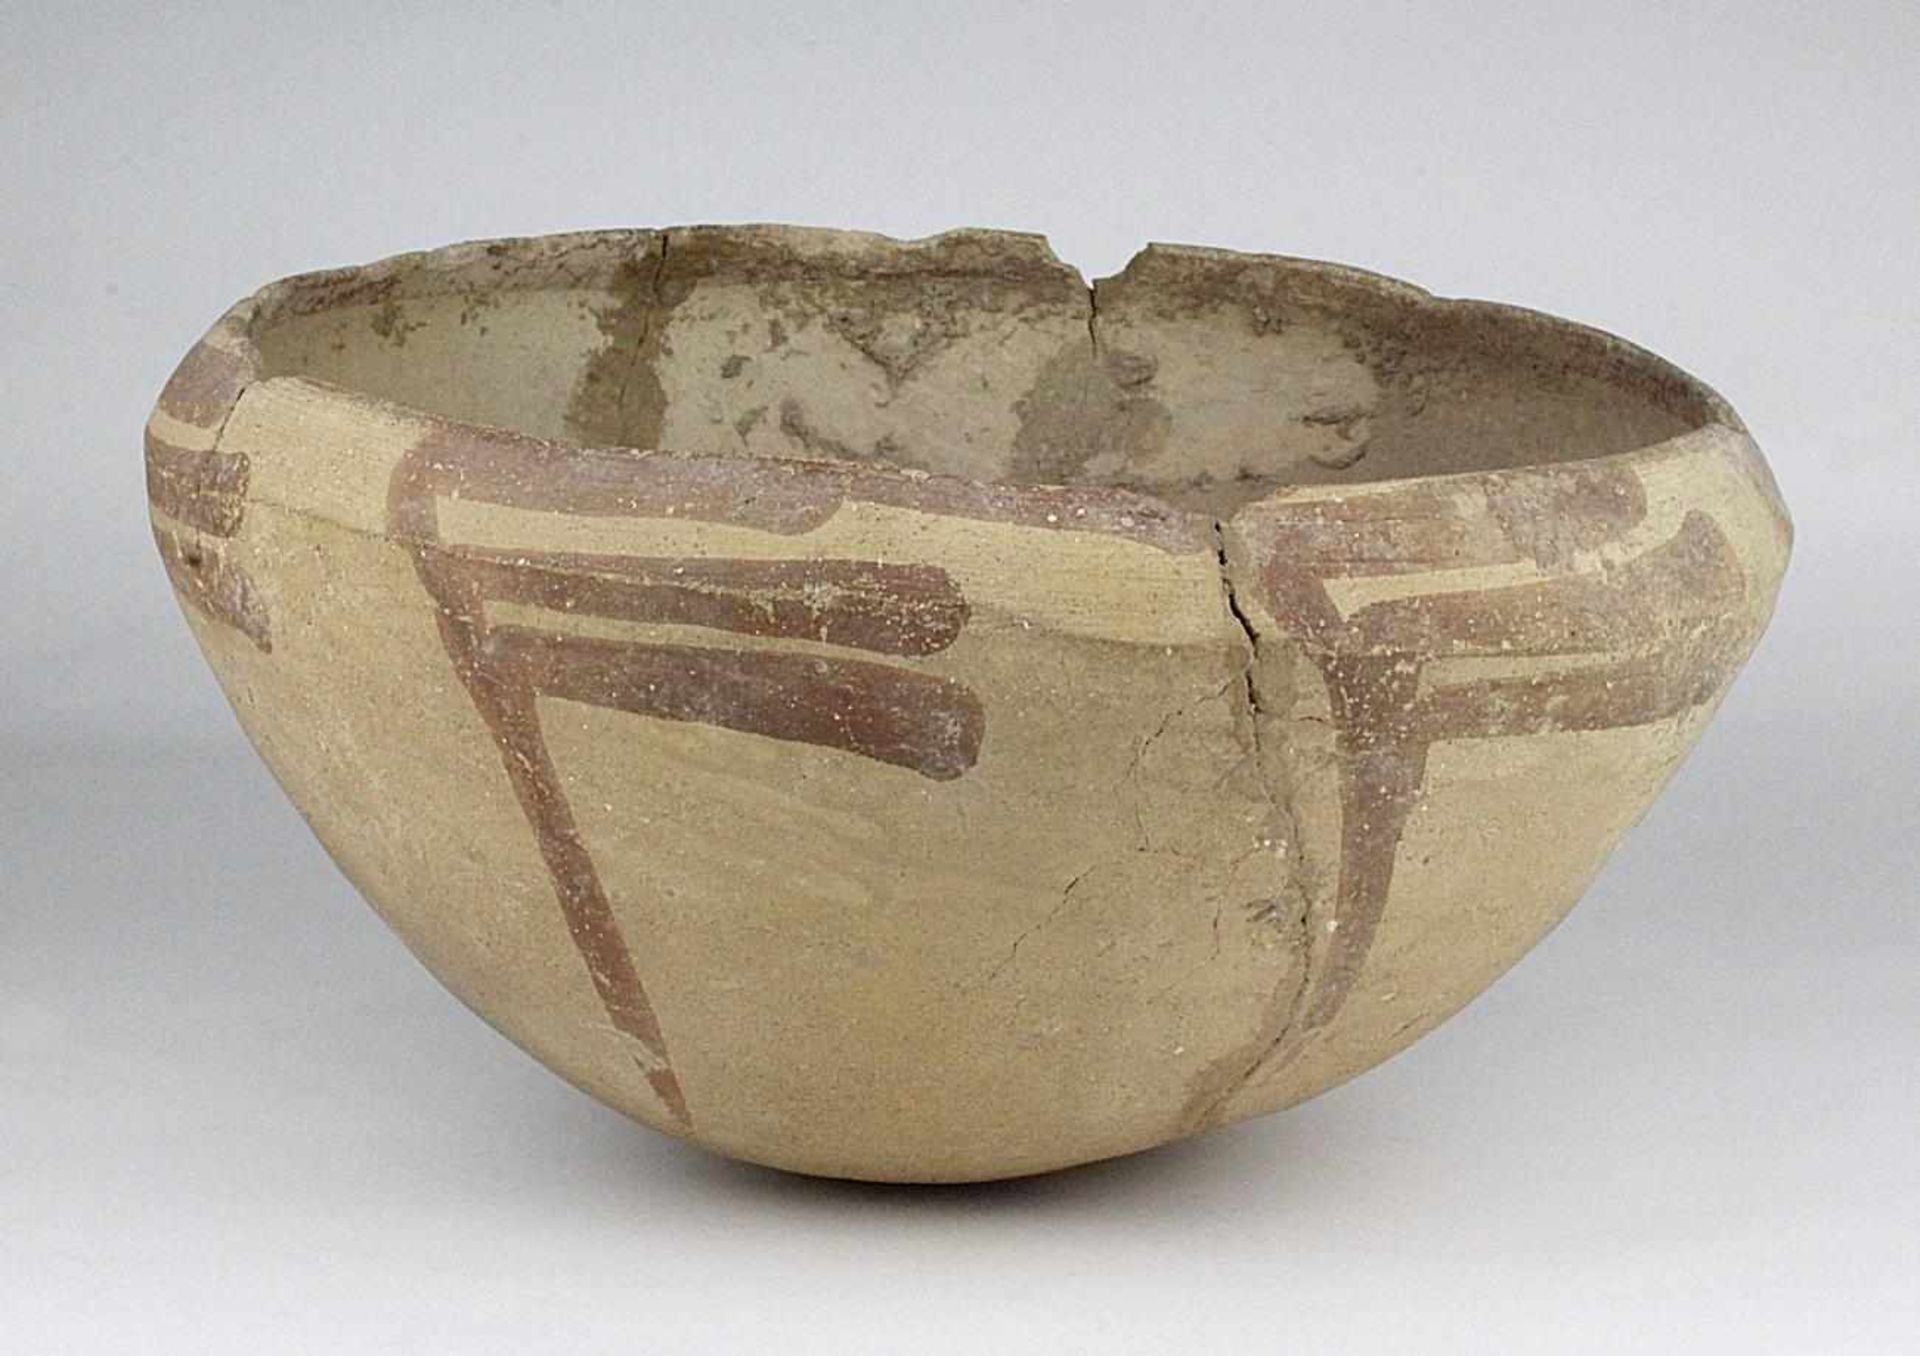 Große präkolumbische Tonschale, Altamerika, wohl n. Chr., dünnwandig, Rand leicht eingezogen, heller